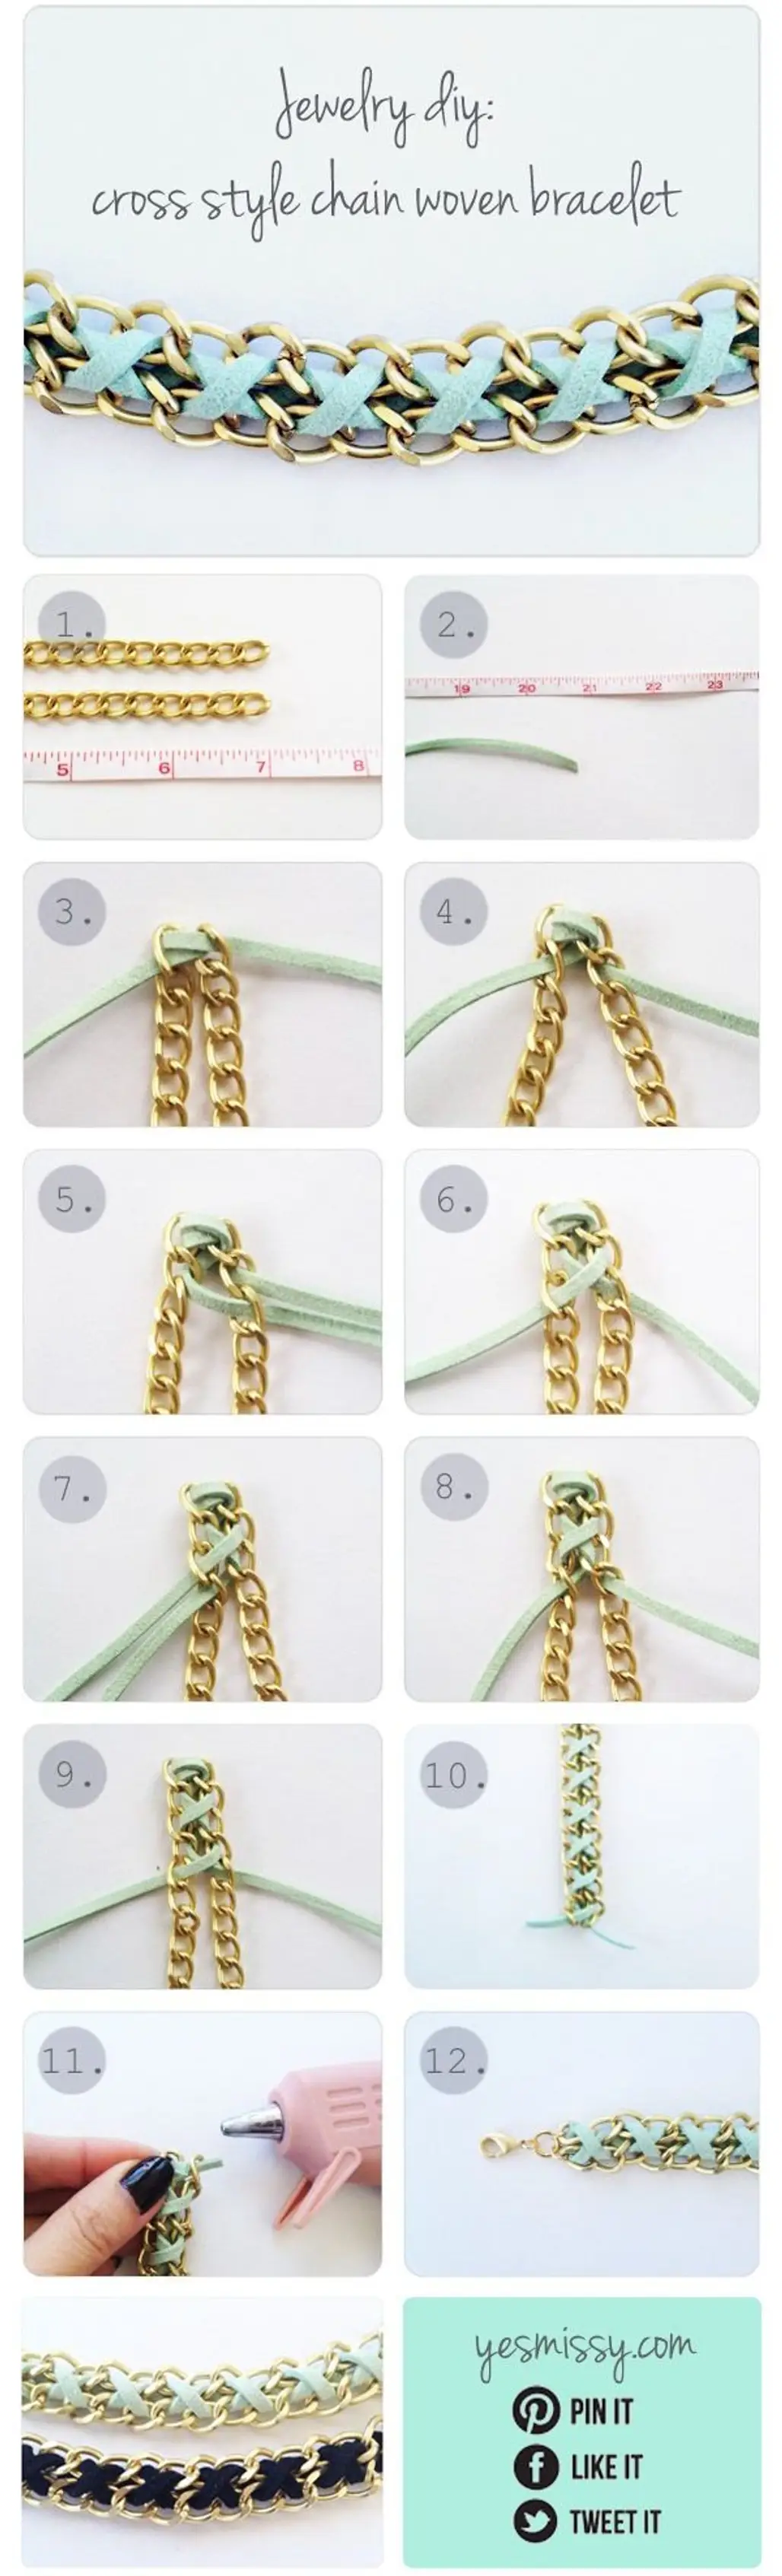 Cross Style Chain Woven Bracelet